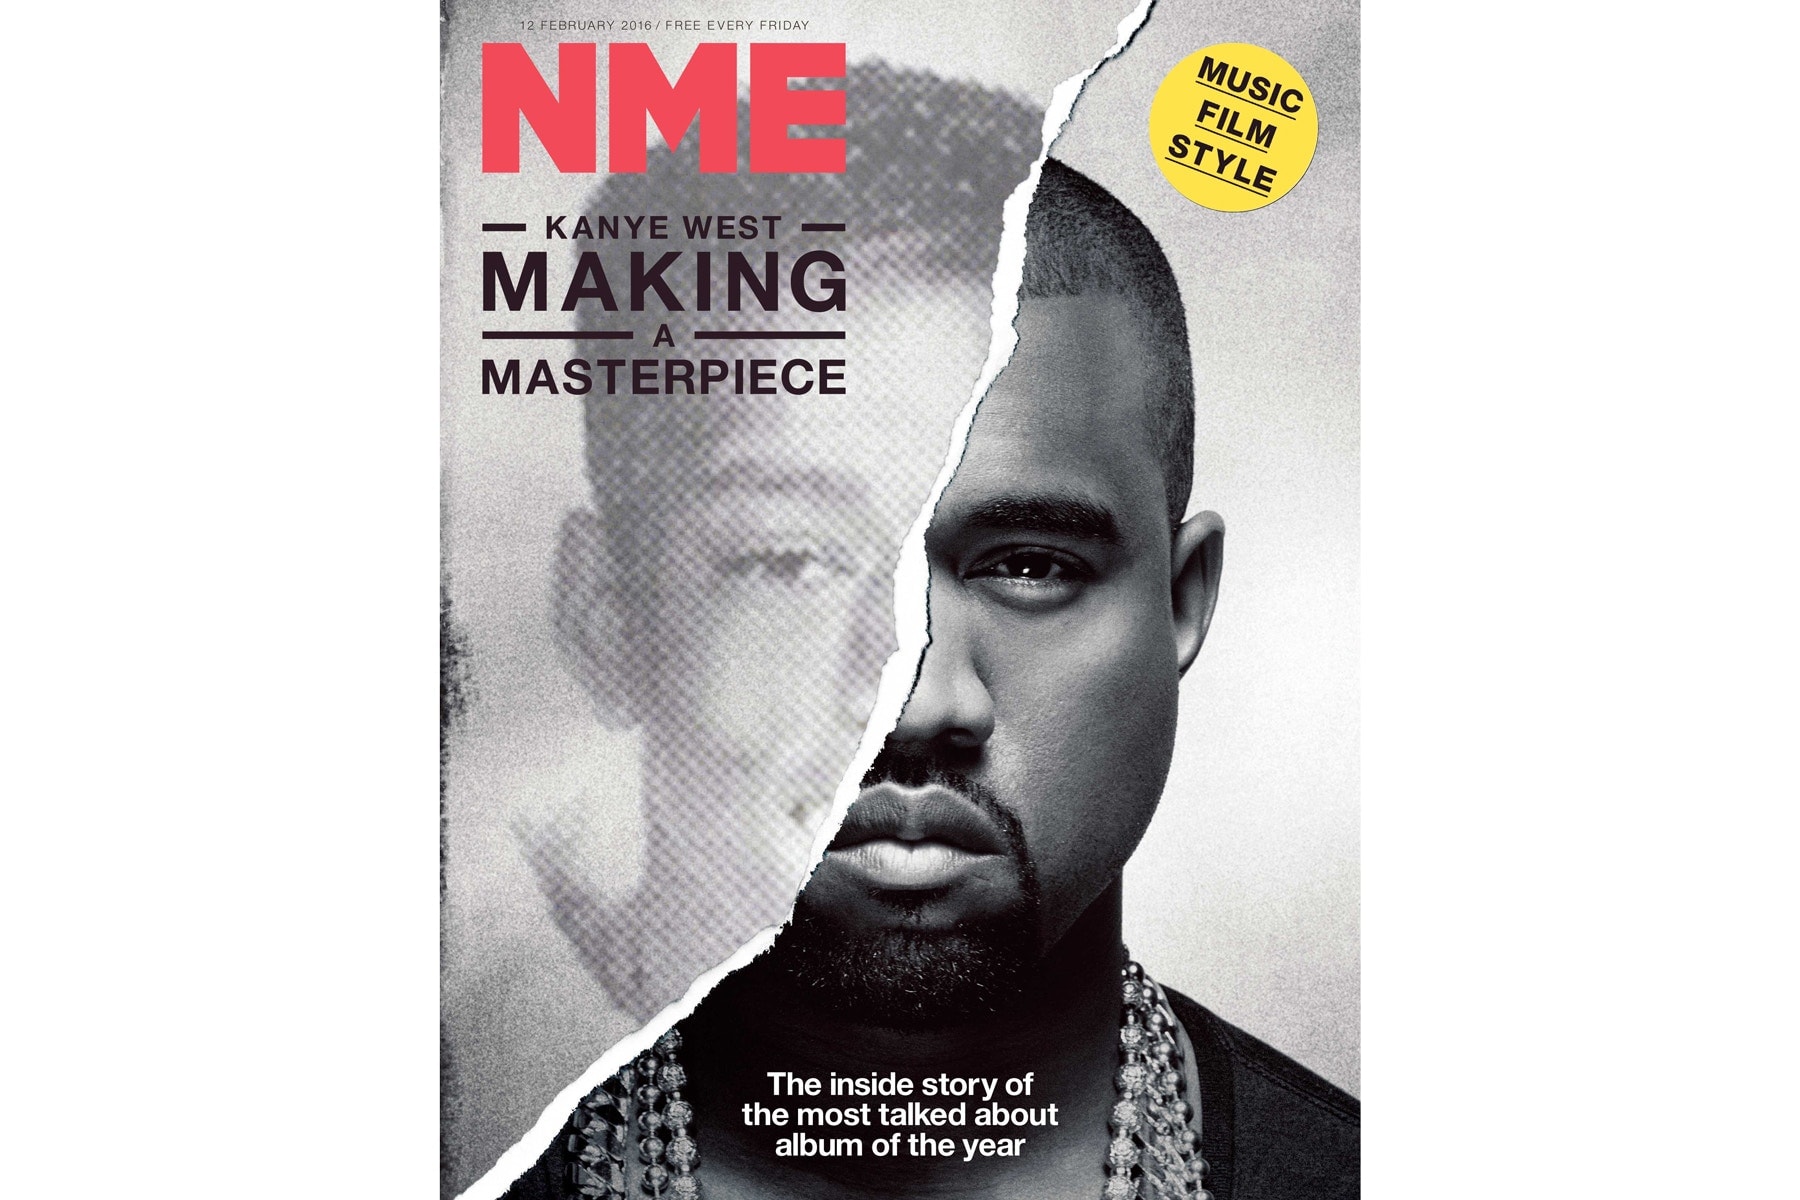 音樂雜誌《NME》宣佈停止發行印刷版本